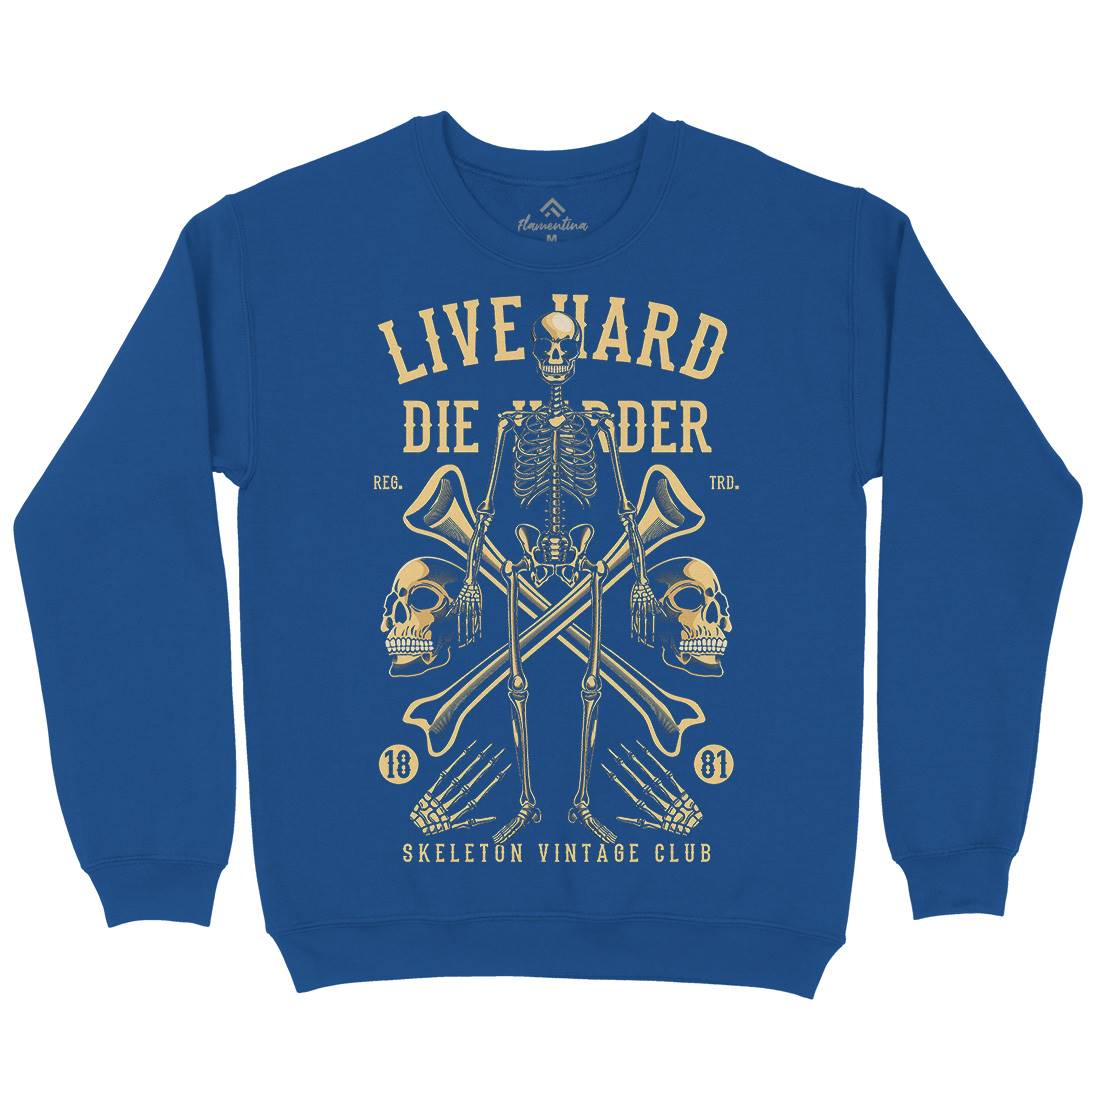 Live Hard Die Harder Kids Crew Neck Sweatshirt Retro C387